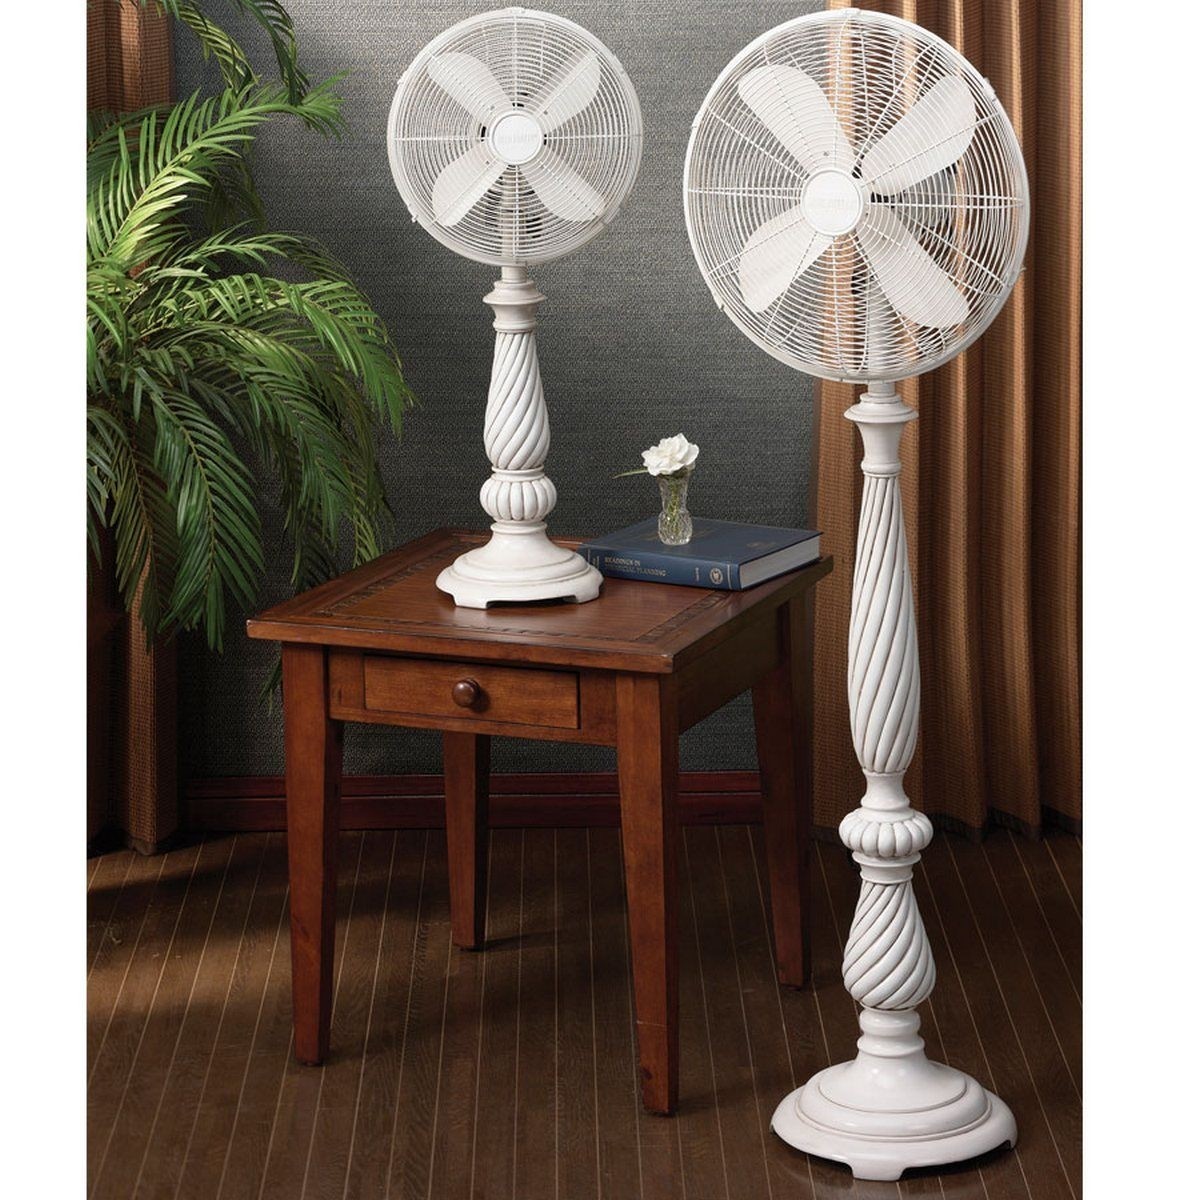 White antique pedestal fan from india floor standing fan